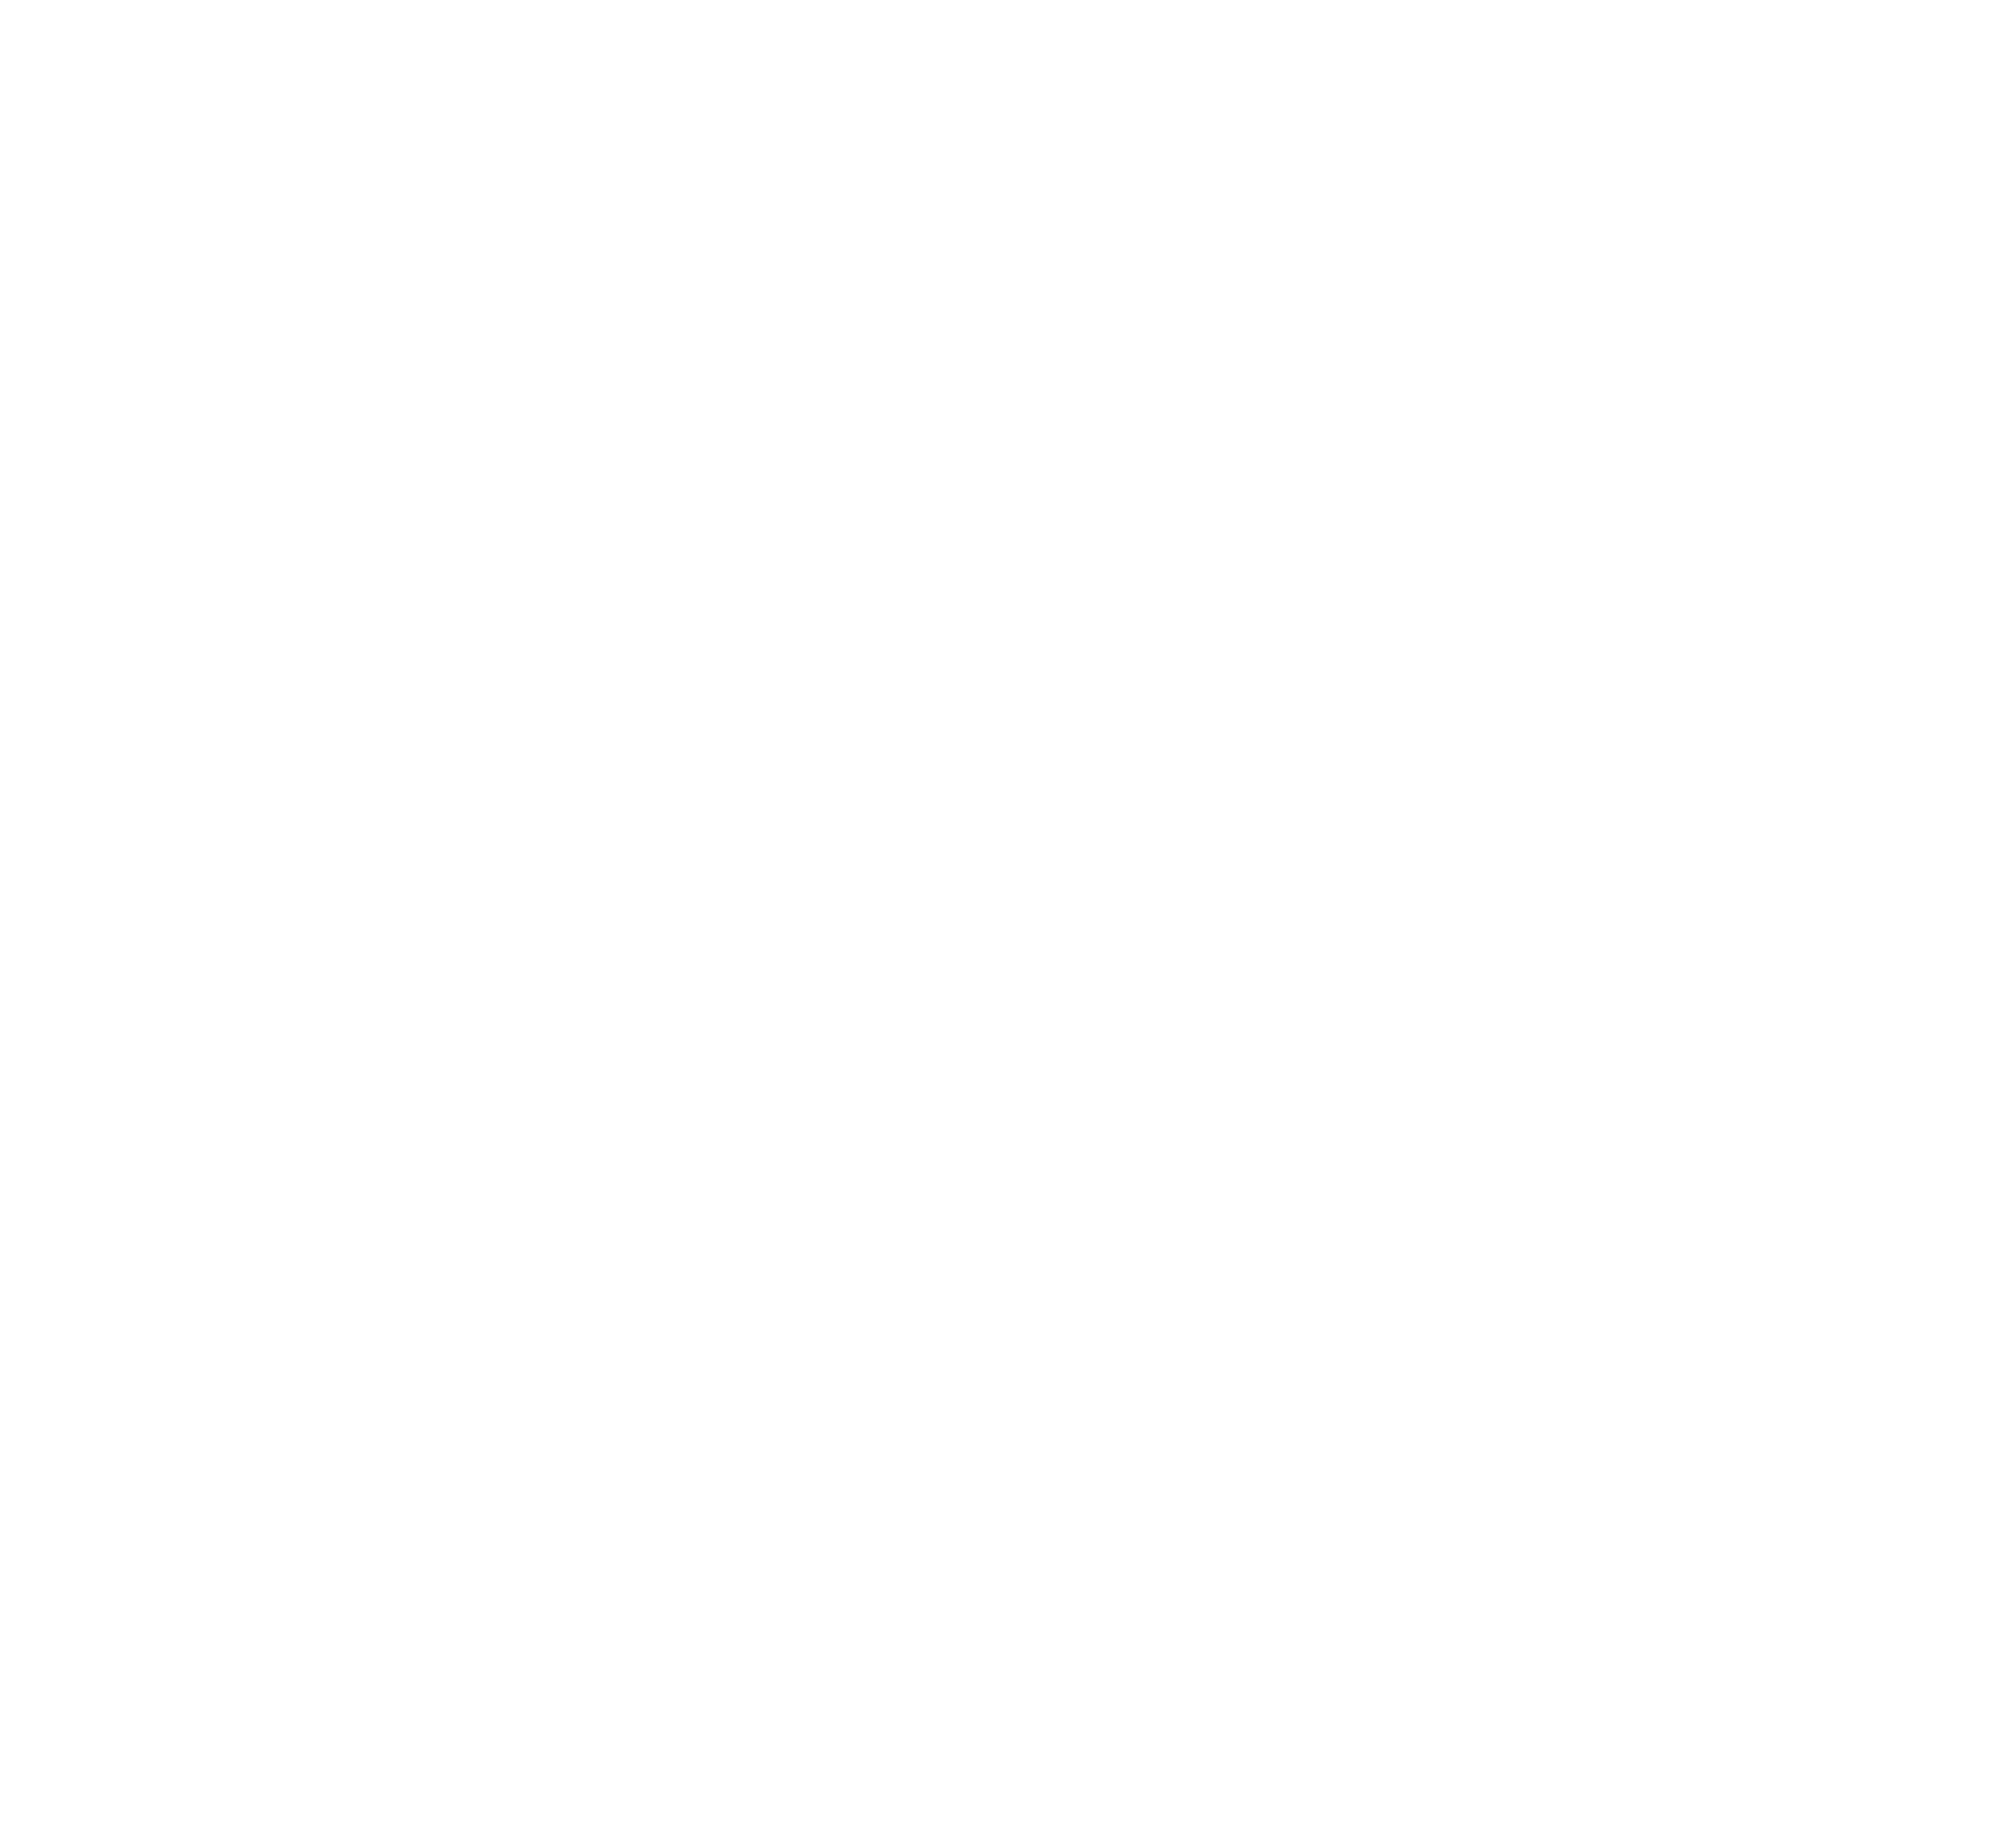 Little Black Pistol